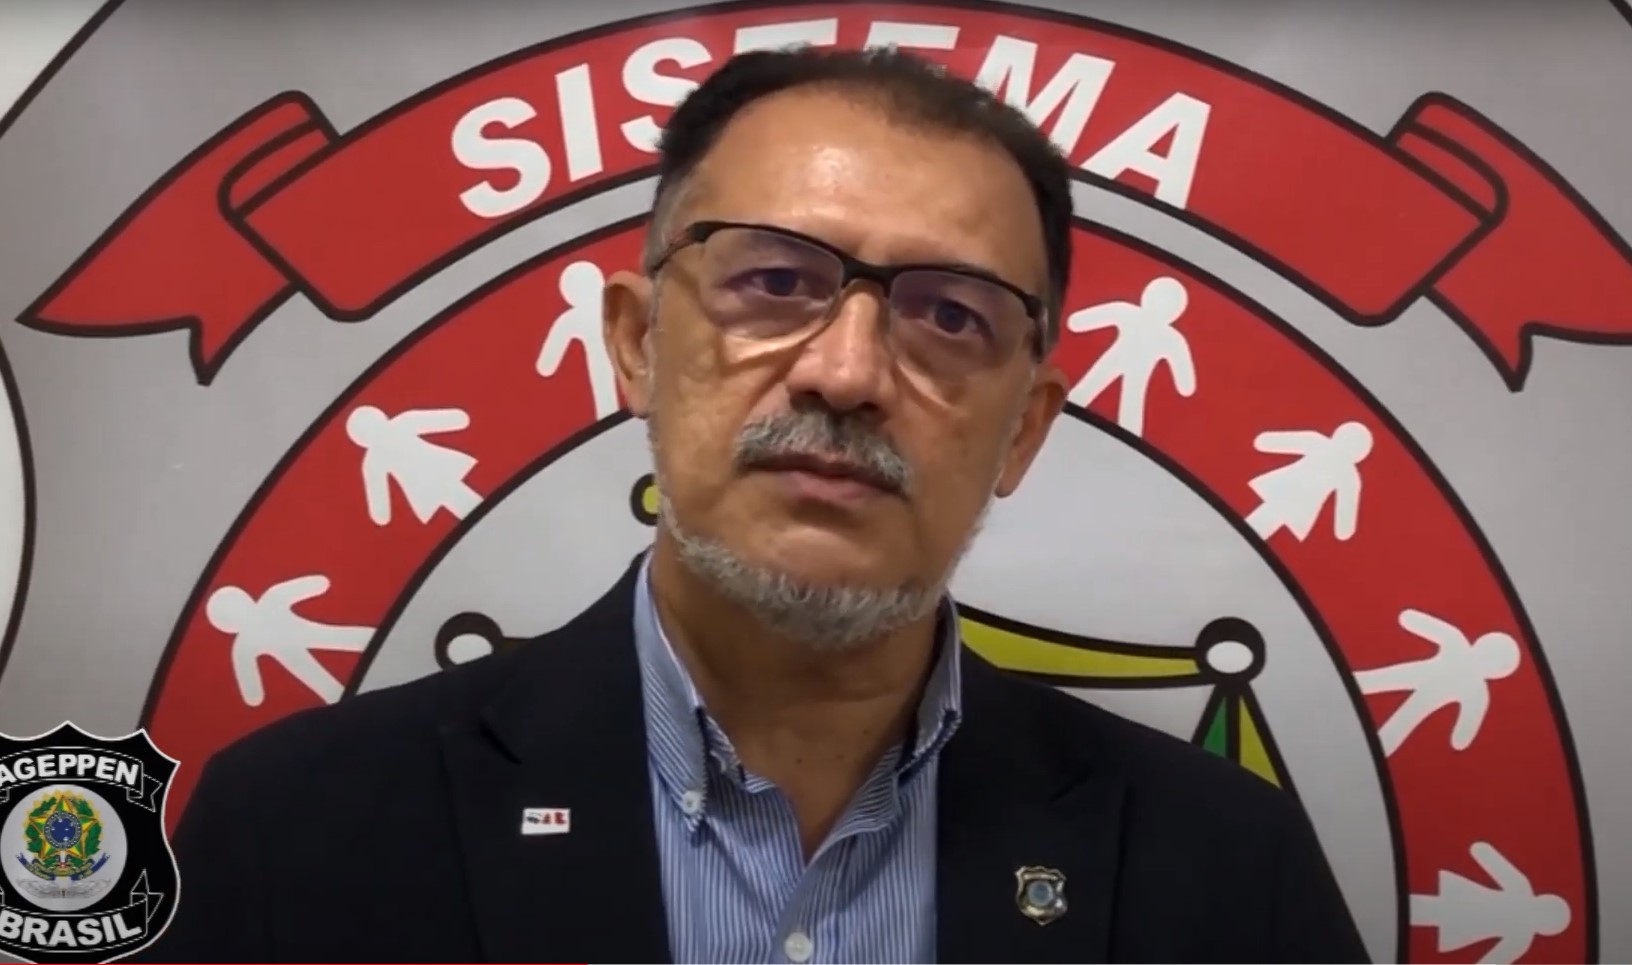 O presidente da Associação dos Policiais Penais do Brasil (AGEPPEN-BRASIL), Jacinto Teles